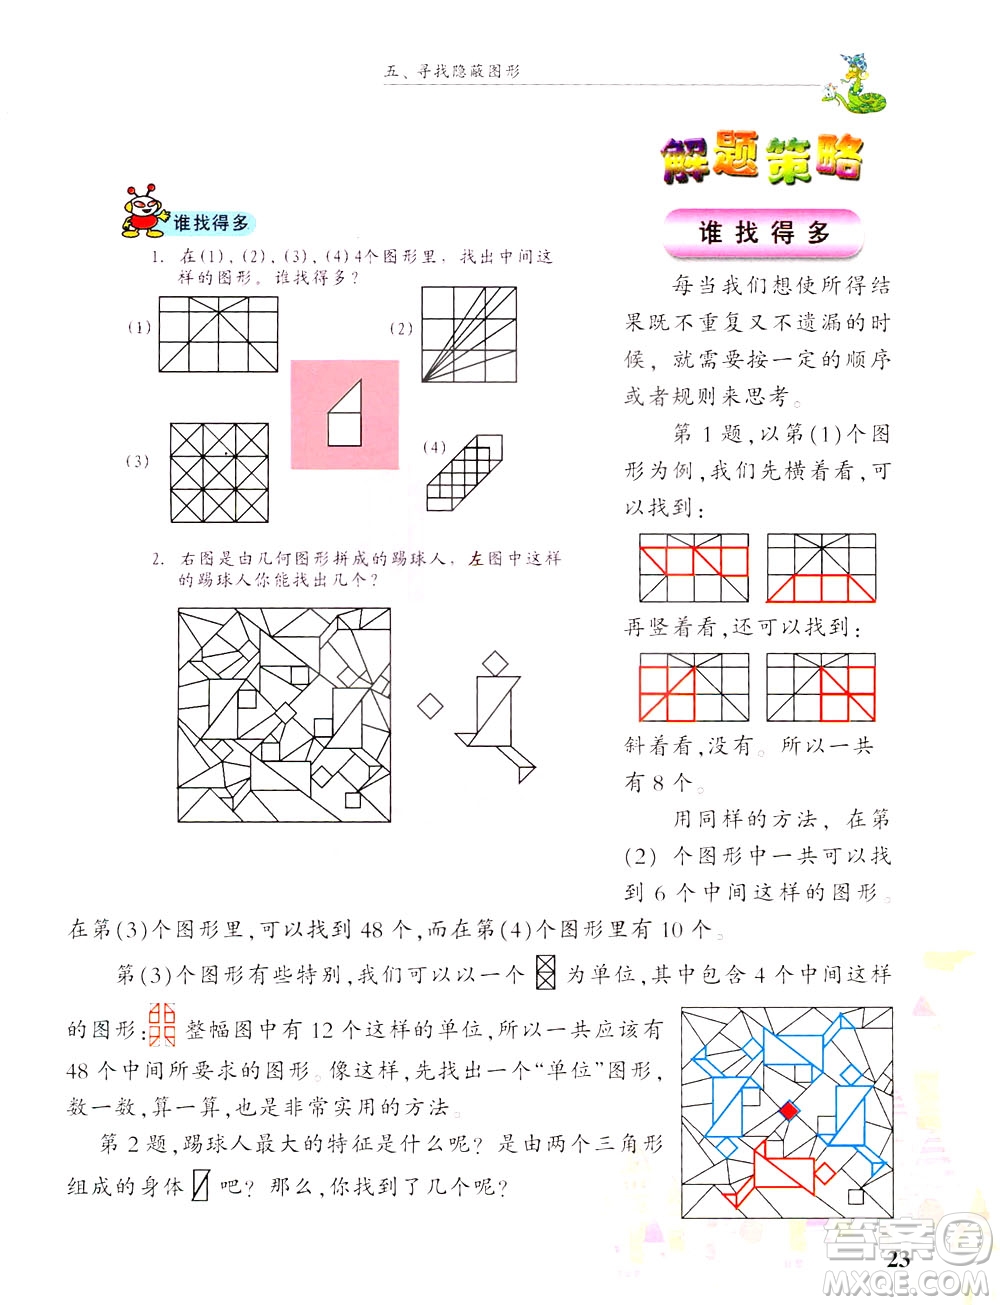 浙江大学出版社2021现代小学数学思维训练解题策略第六册三年级下册答案